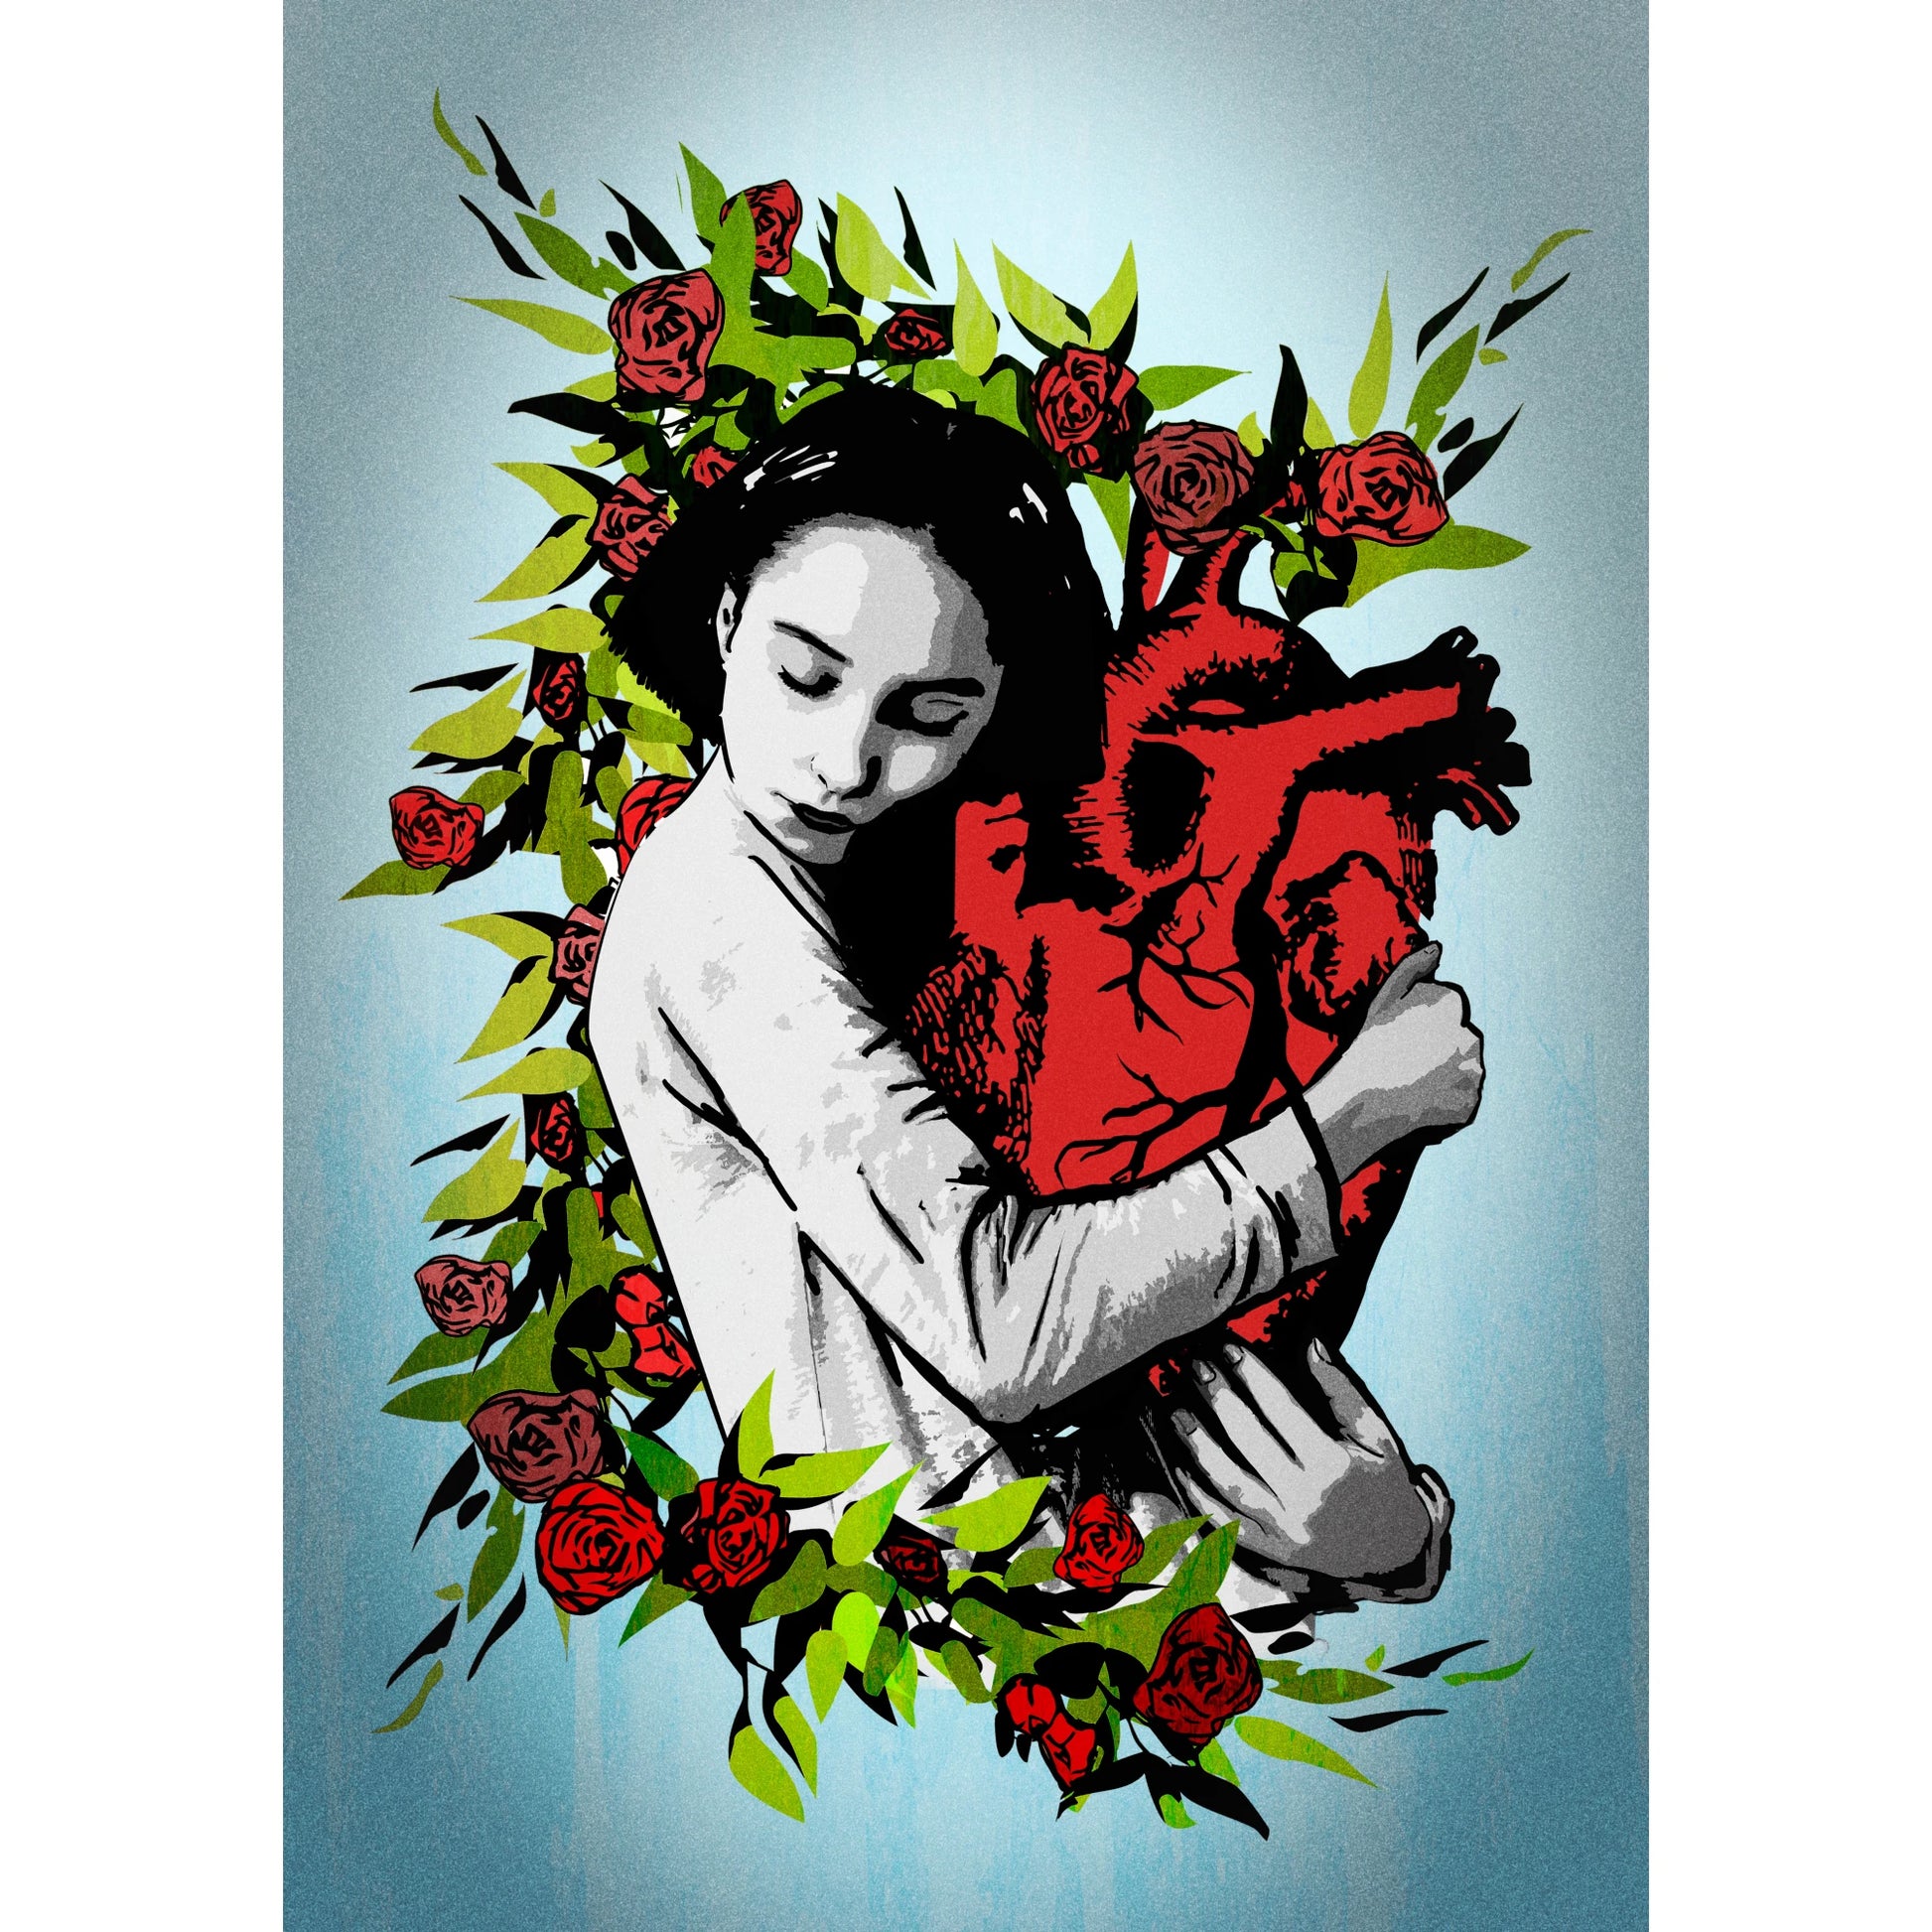 imagen de la grafitera La nena wapa, de una mujer abrazando un corazón anatómico con rosas y flores brotando alrededor